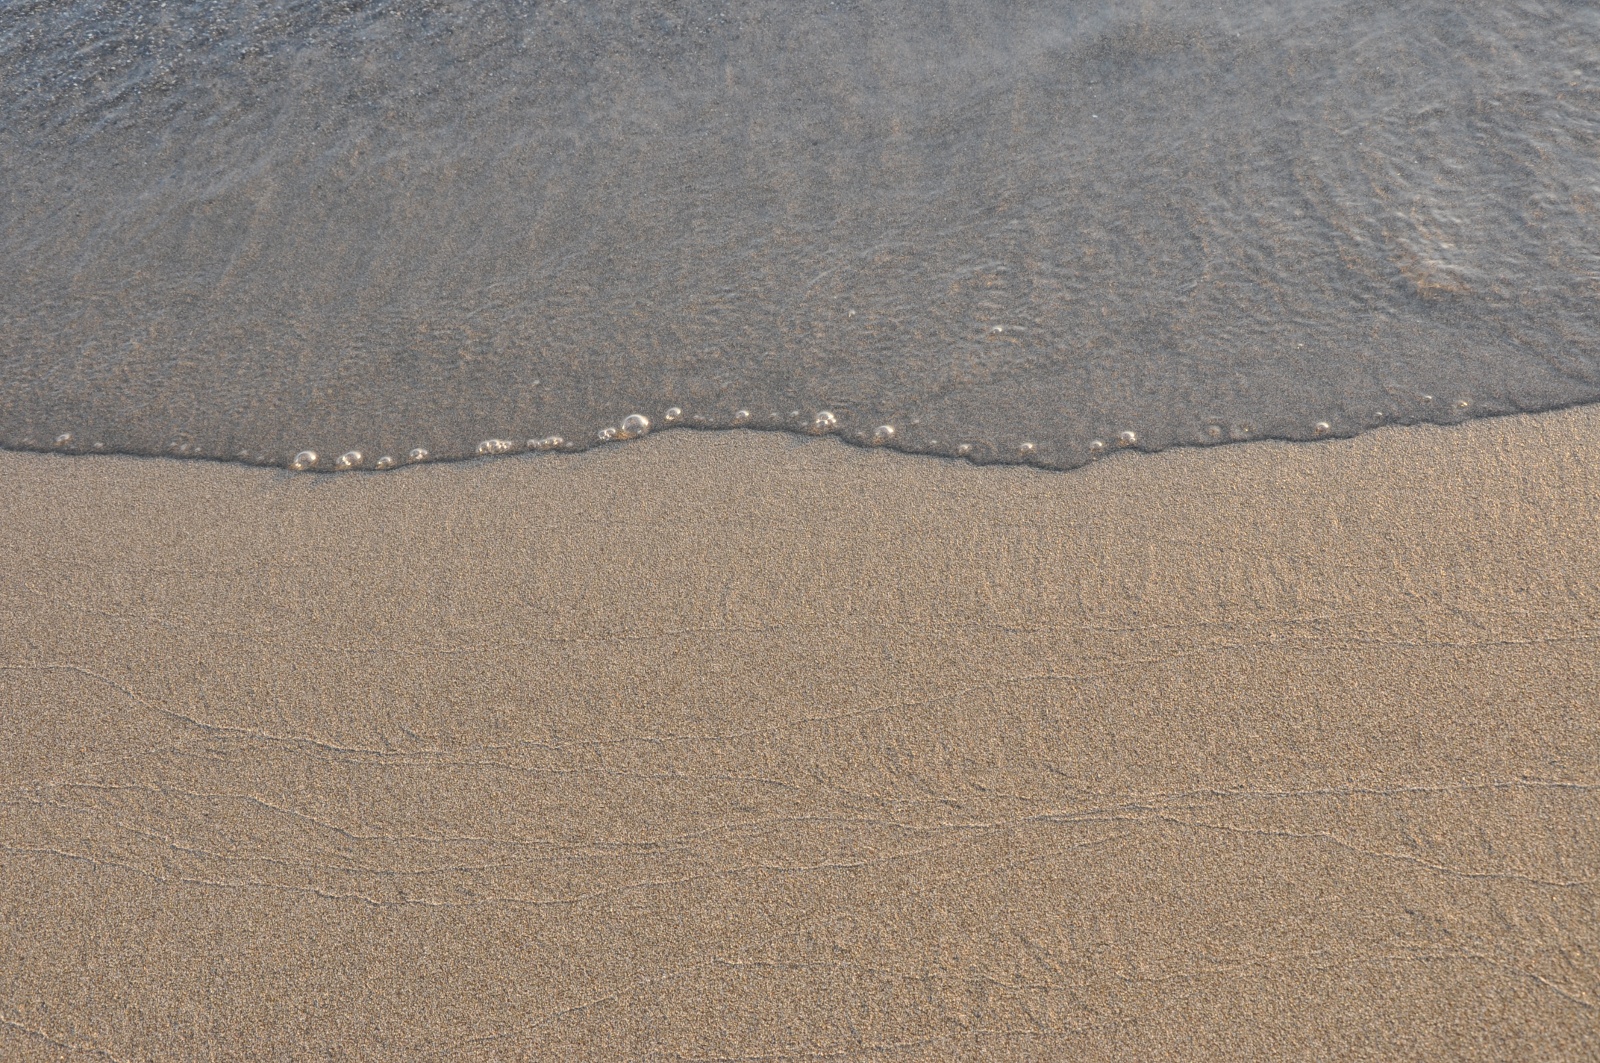 LE MAXIMUM Galets sur sable fin et écriture sur sable